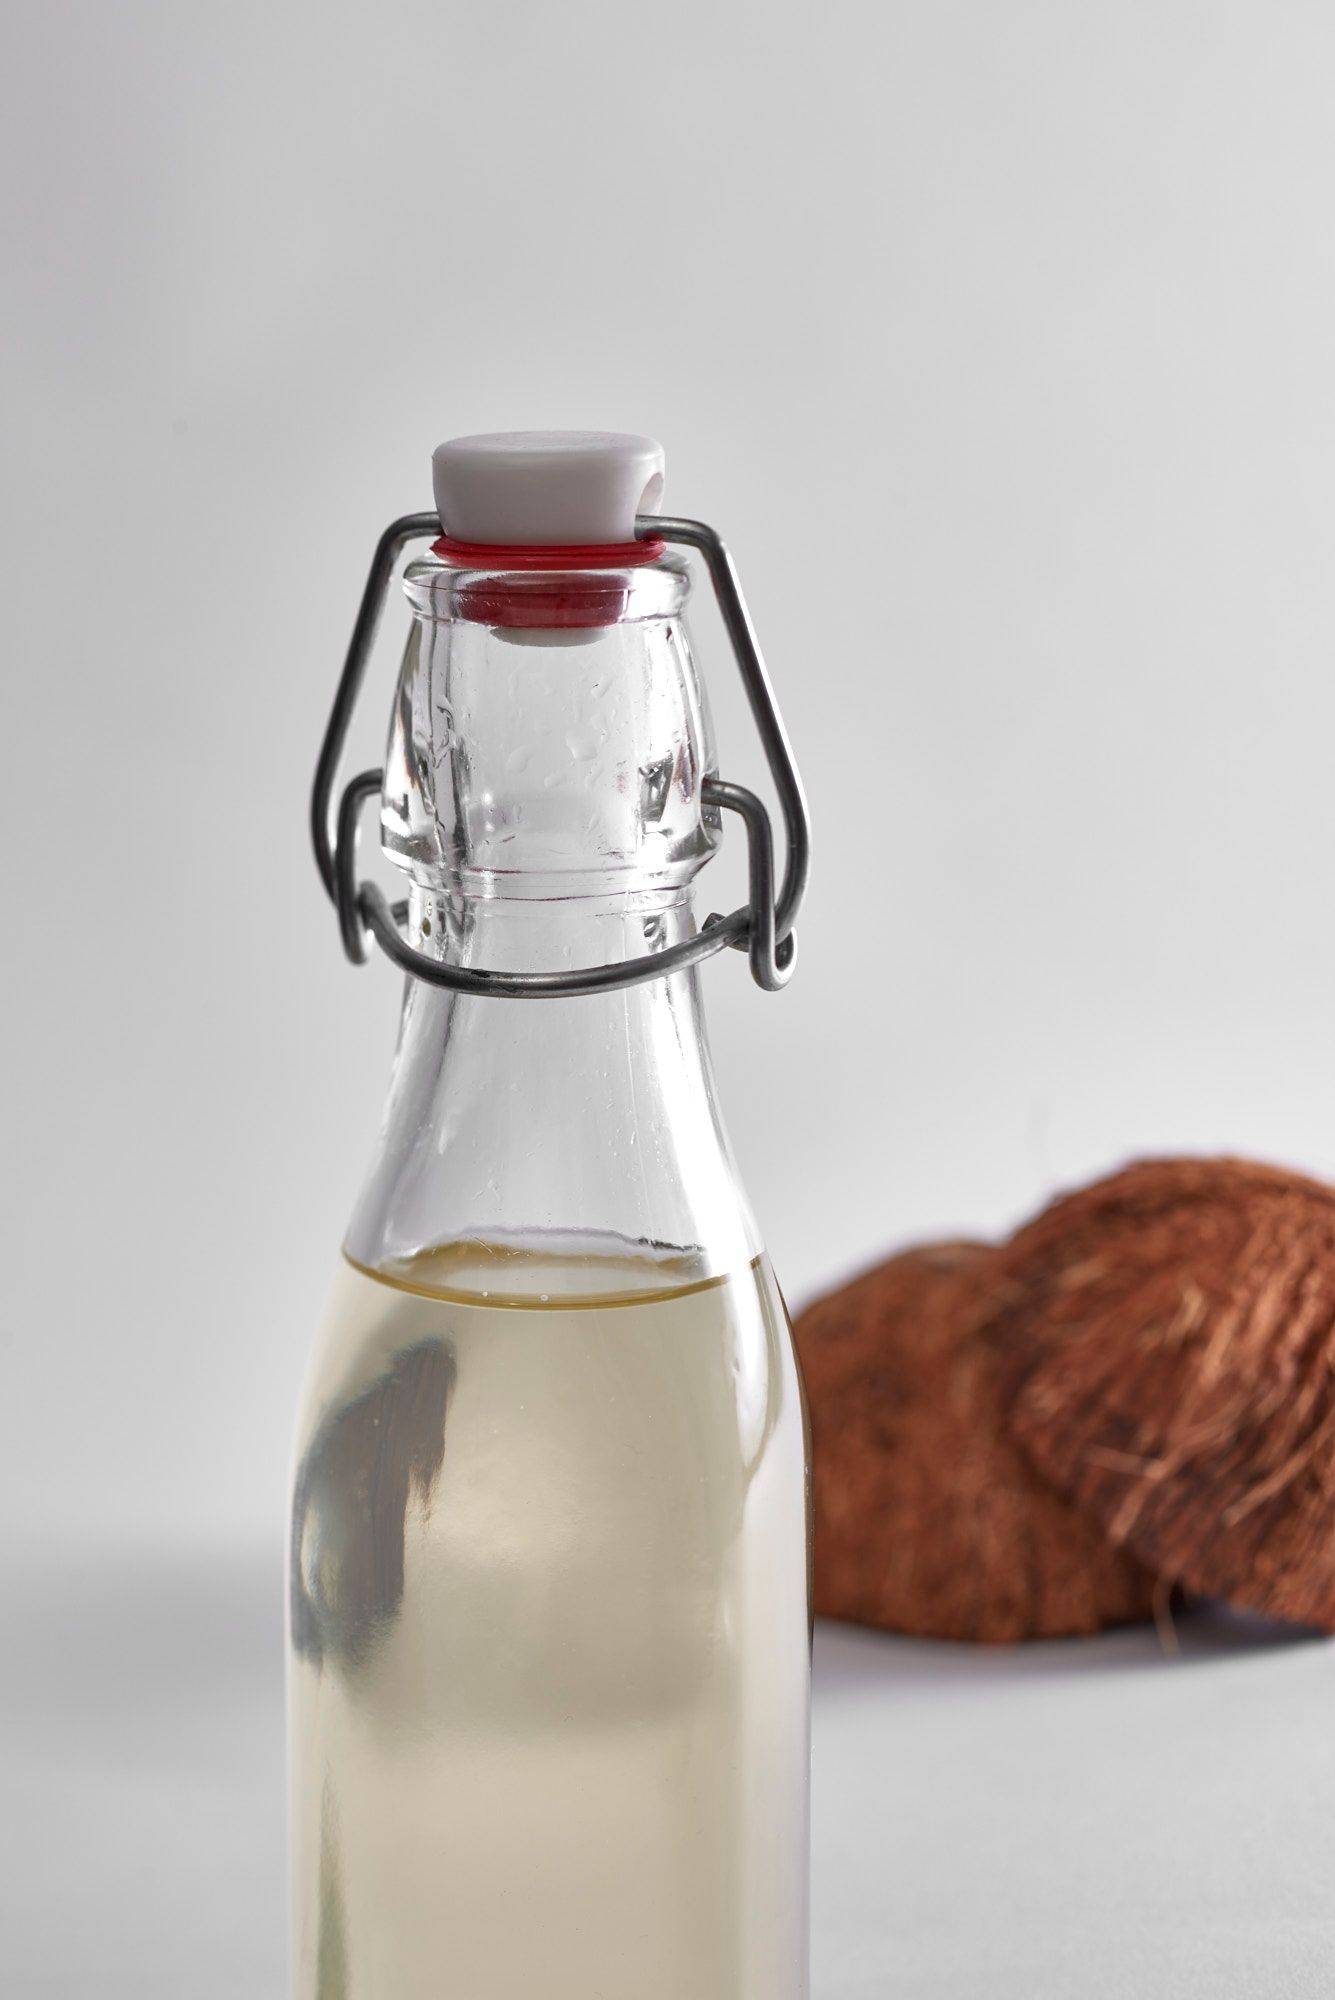 kokos sirup in einer glasflasche auf weißem hintergrund